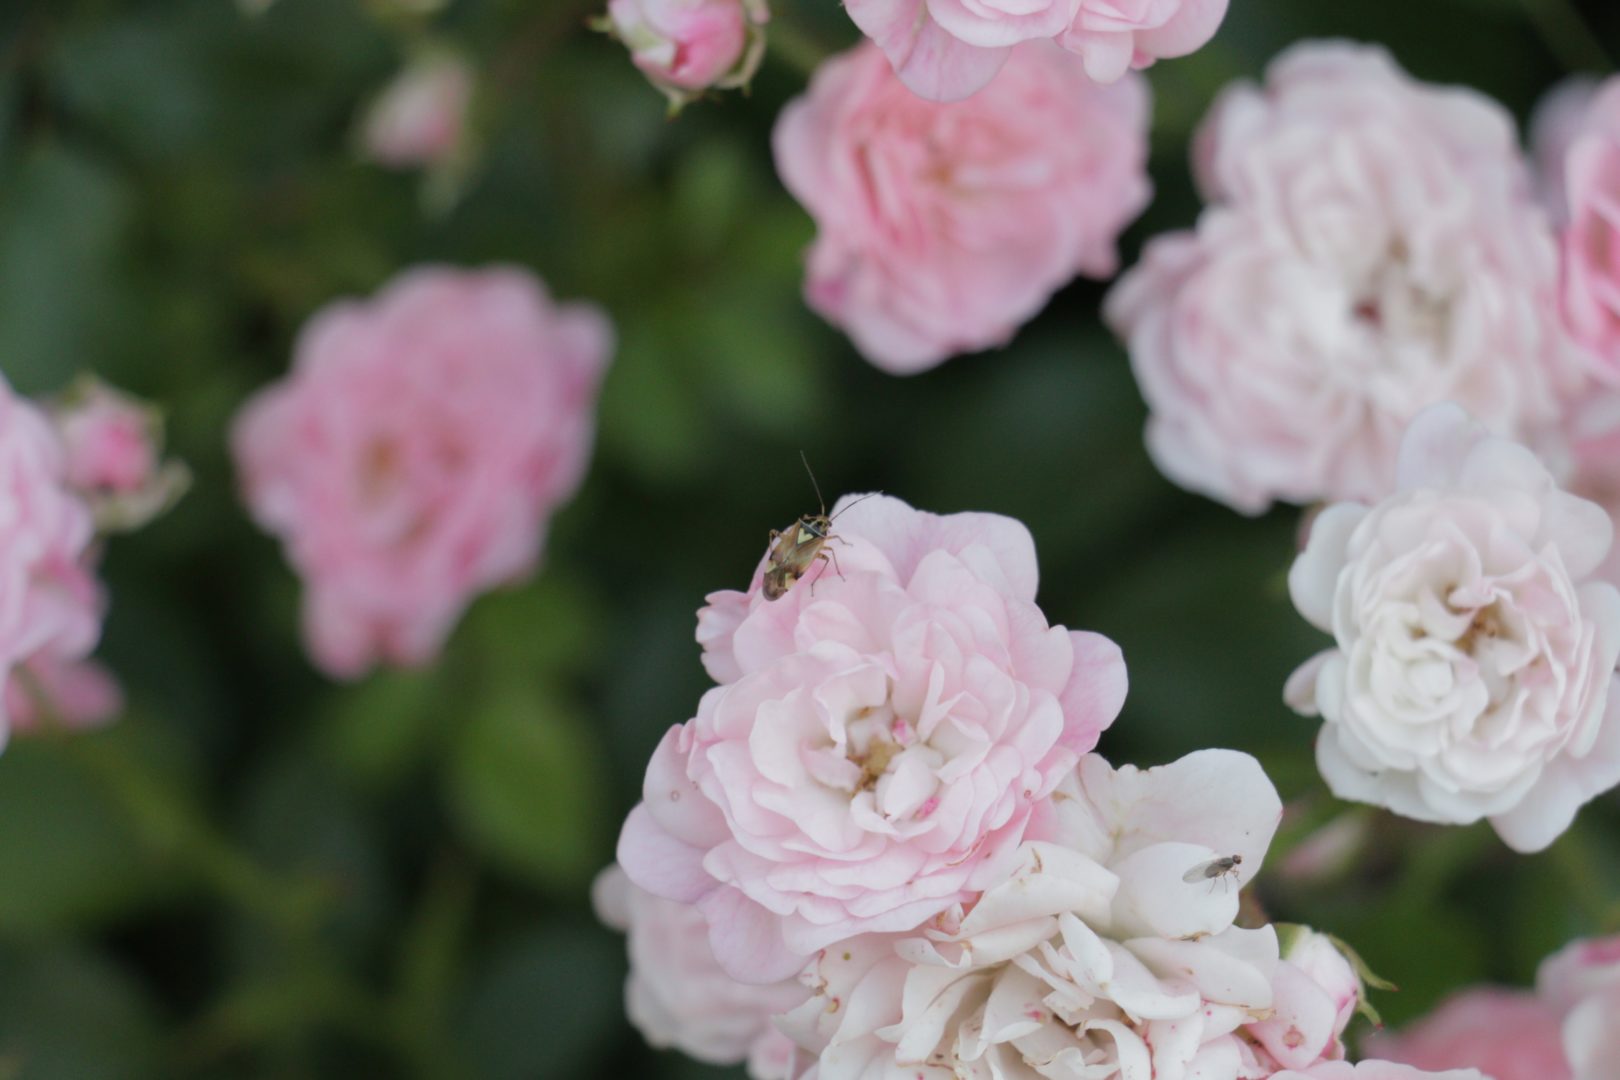 Мелкие жуки на розе